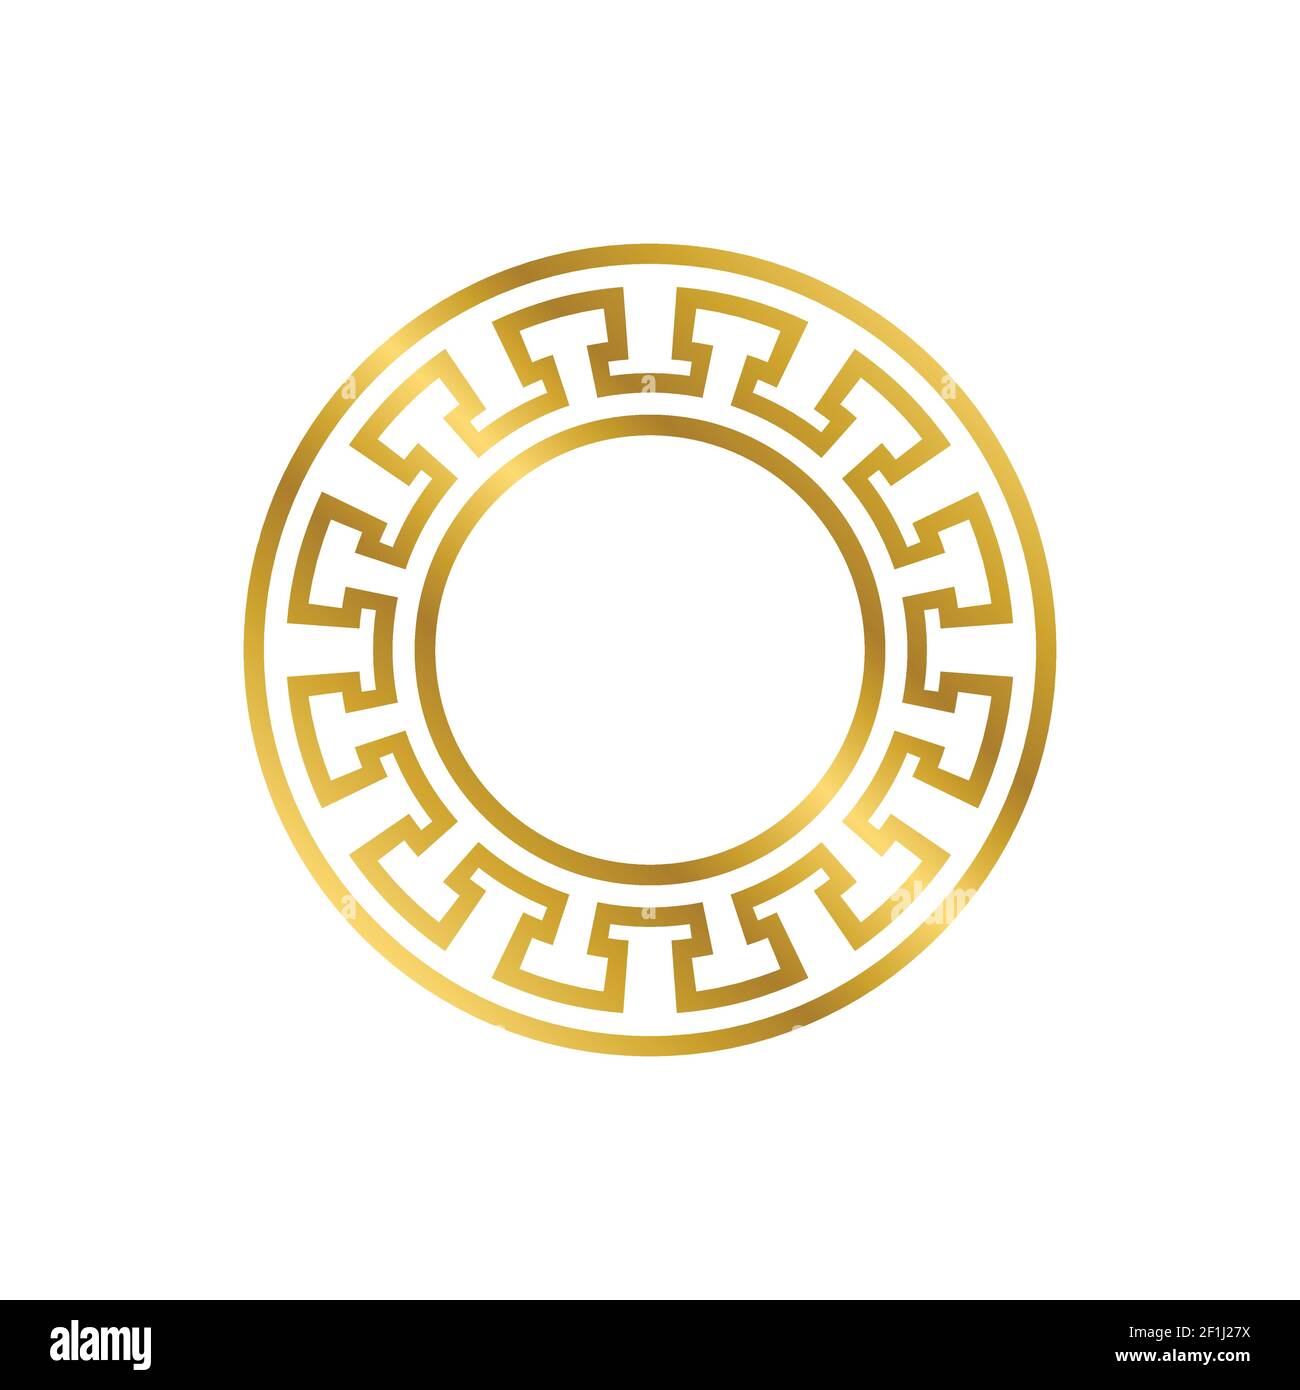 gold versace logo border